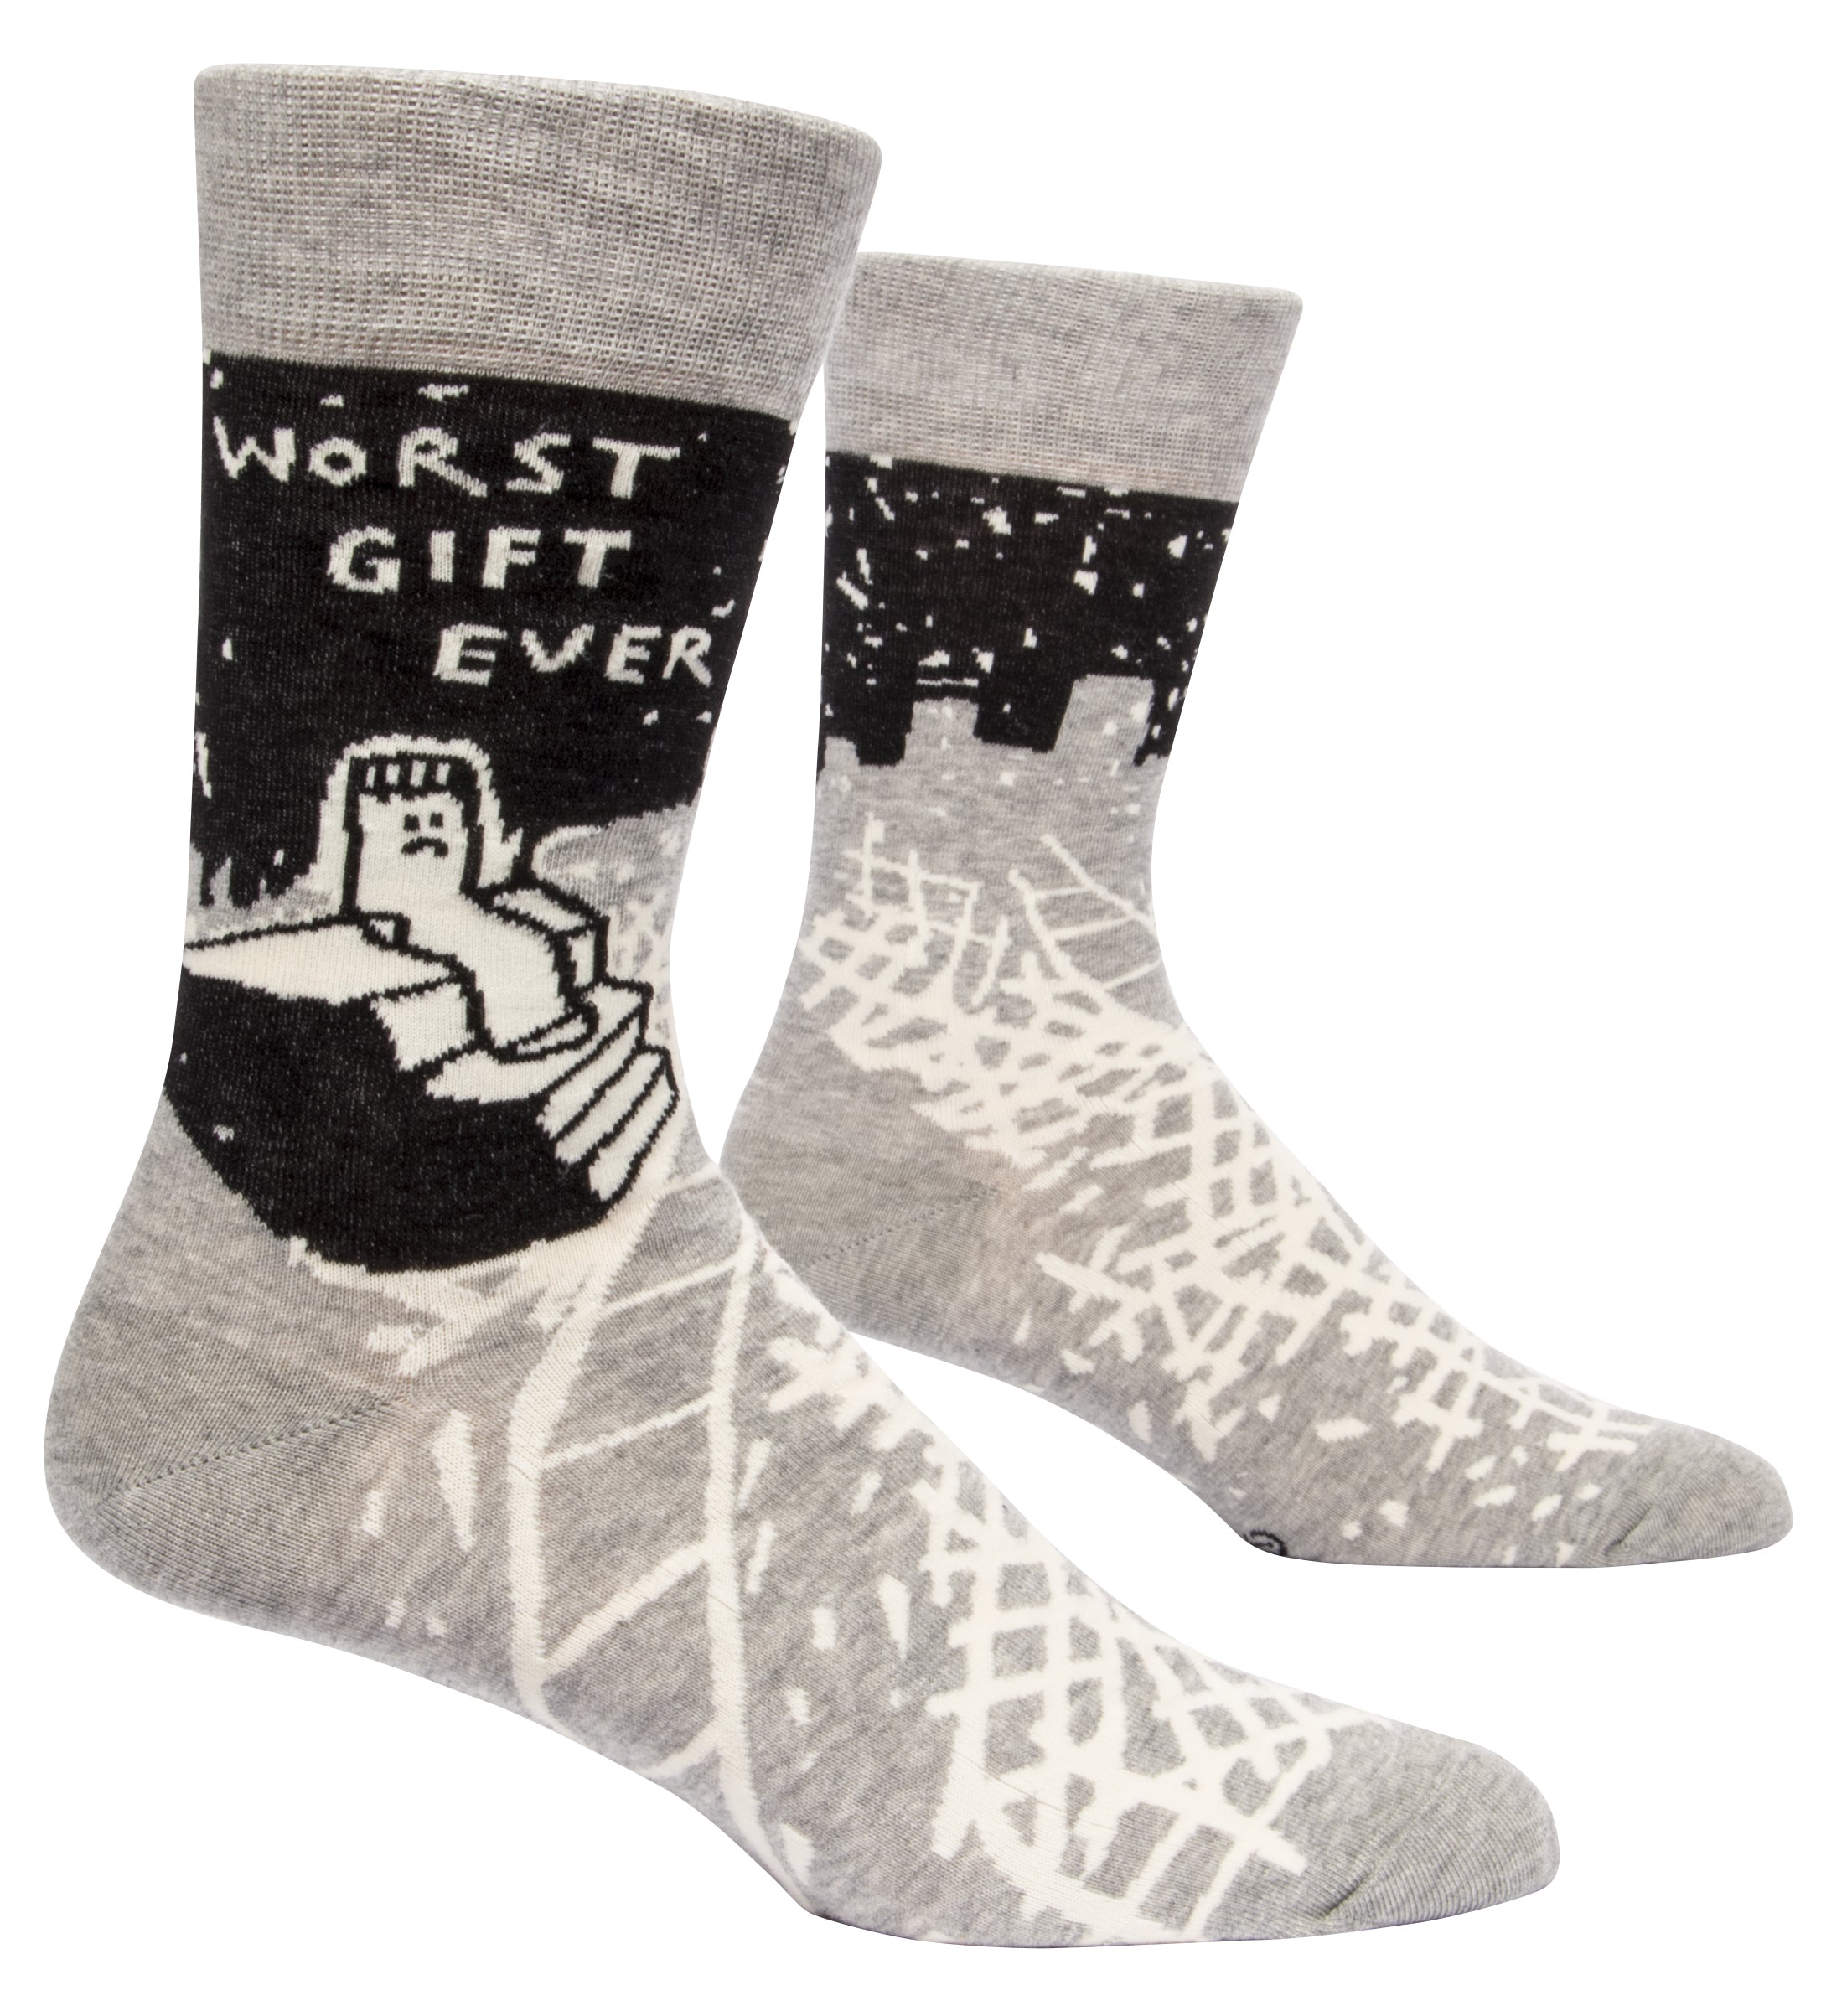 Socken Männer: Worst Gift Ever